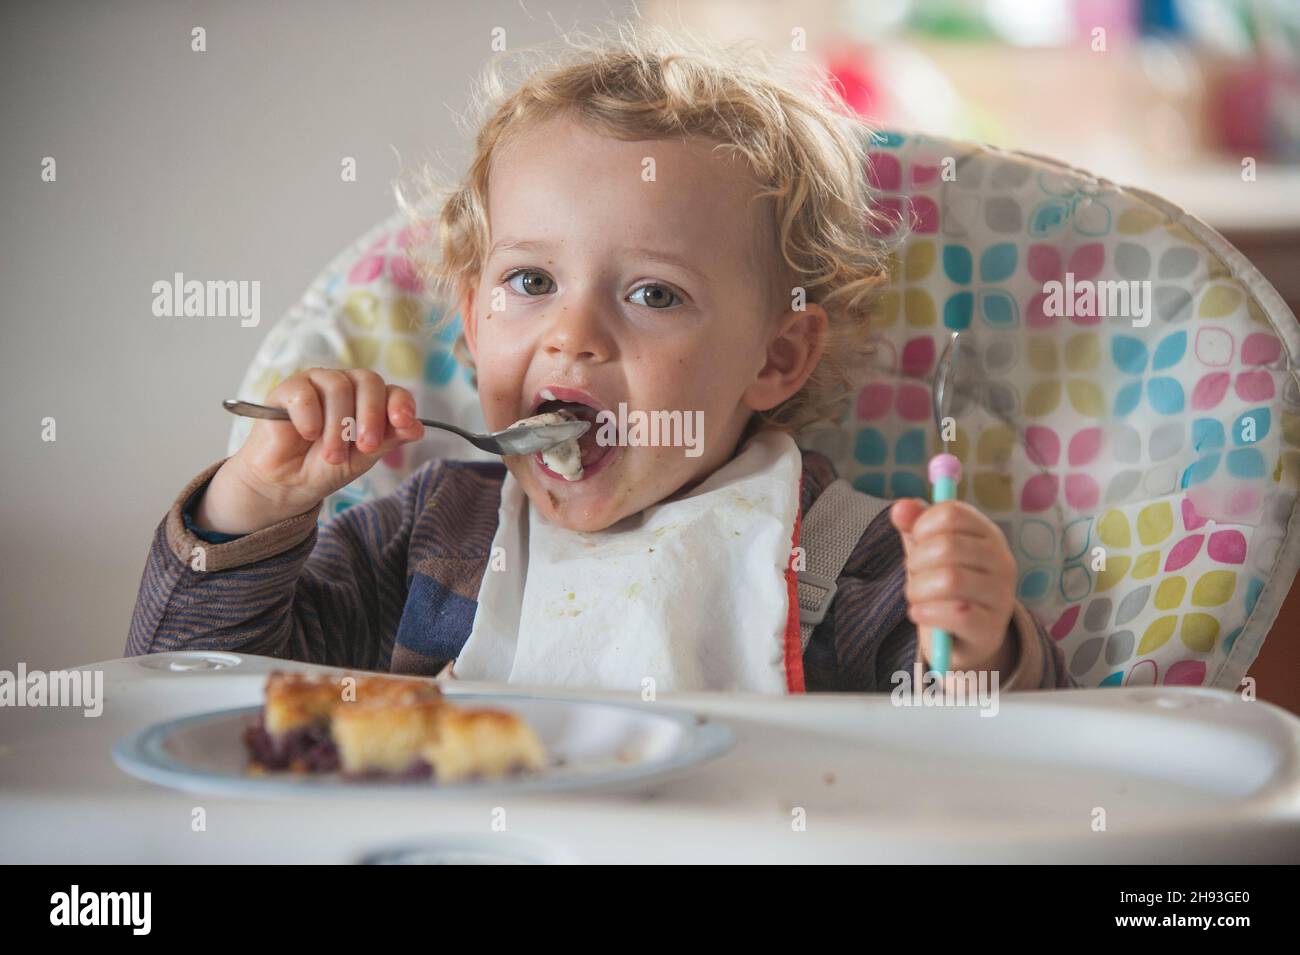 Una niña de 2 años come un poco de pastel y helado como aperitivo por la tarde en una trona. Foto de stock